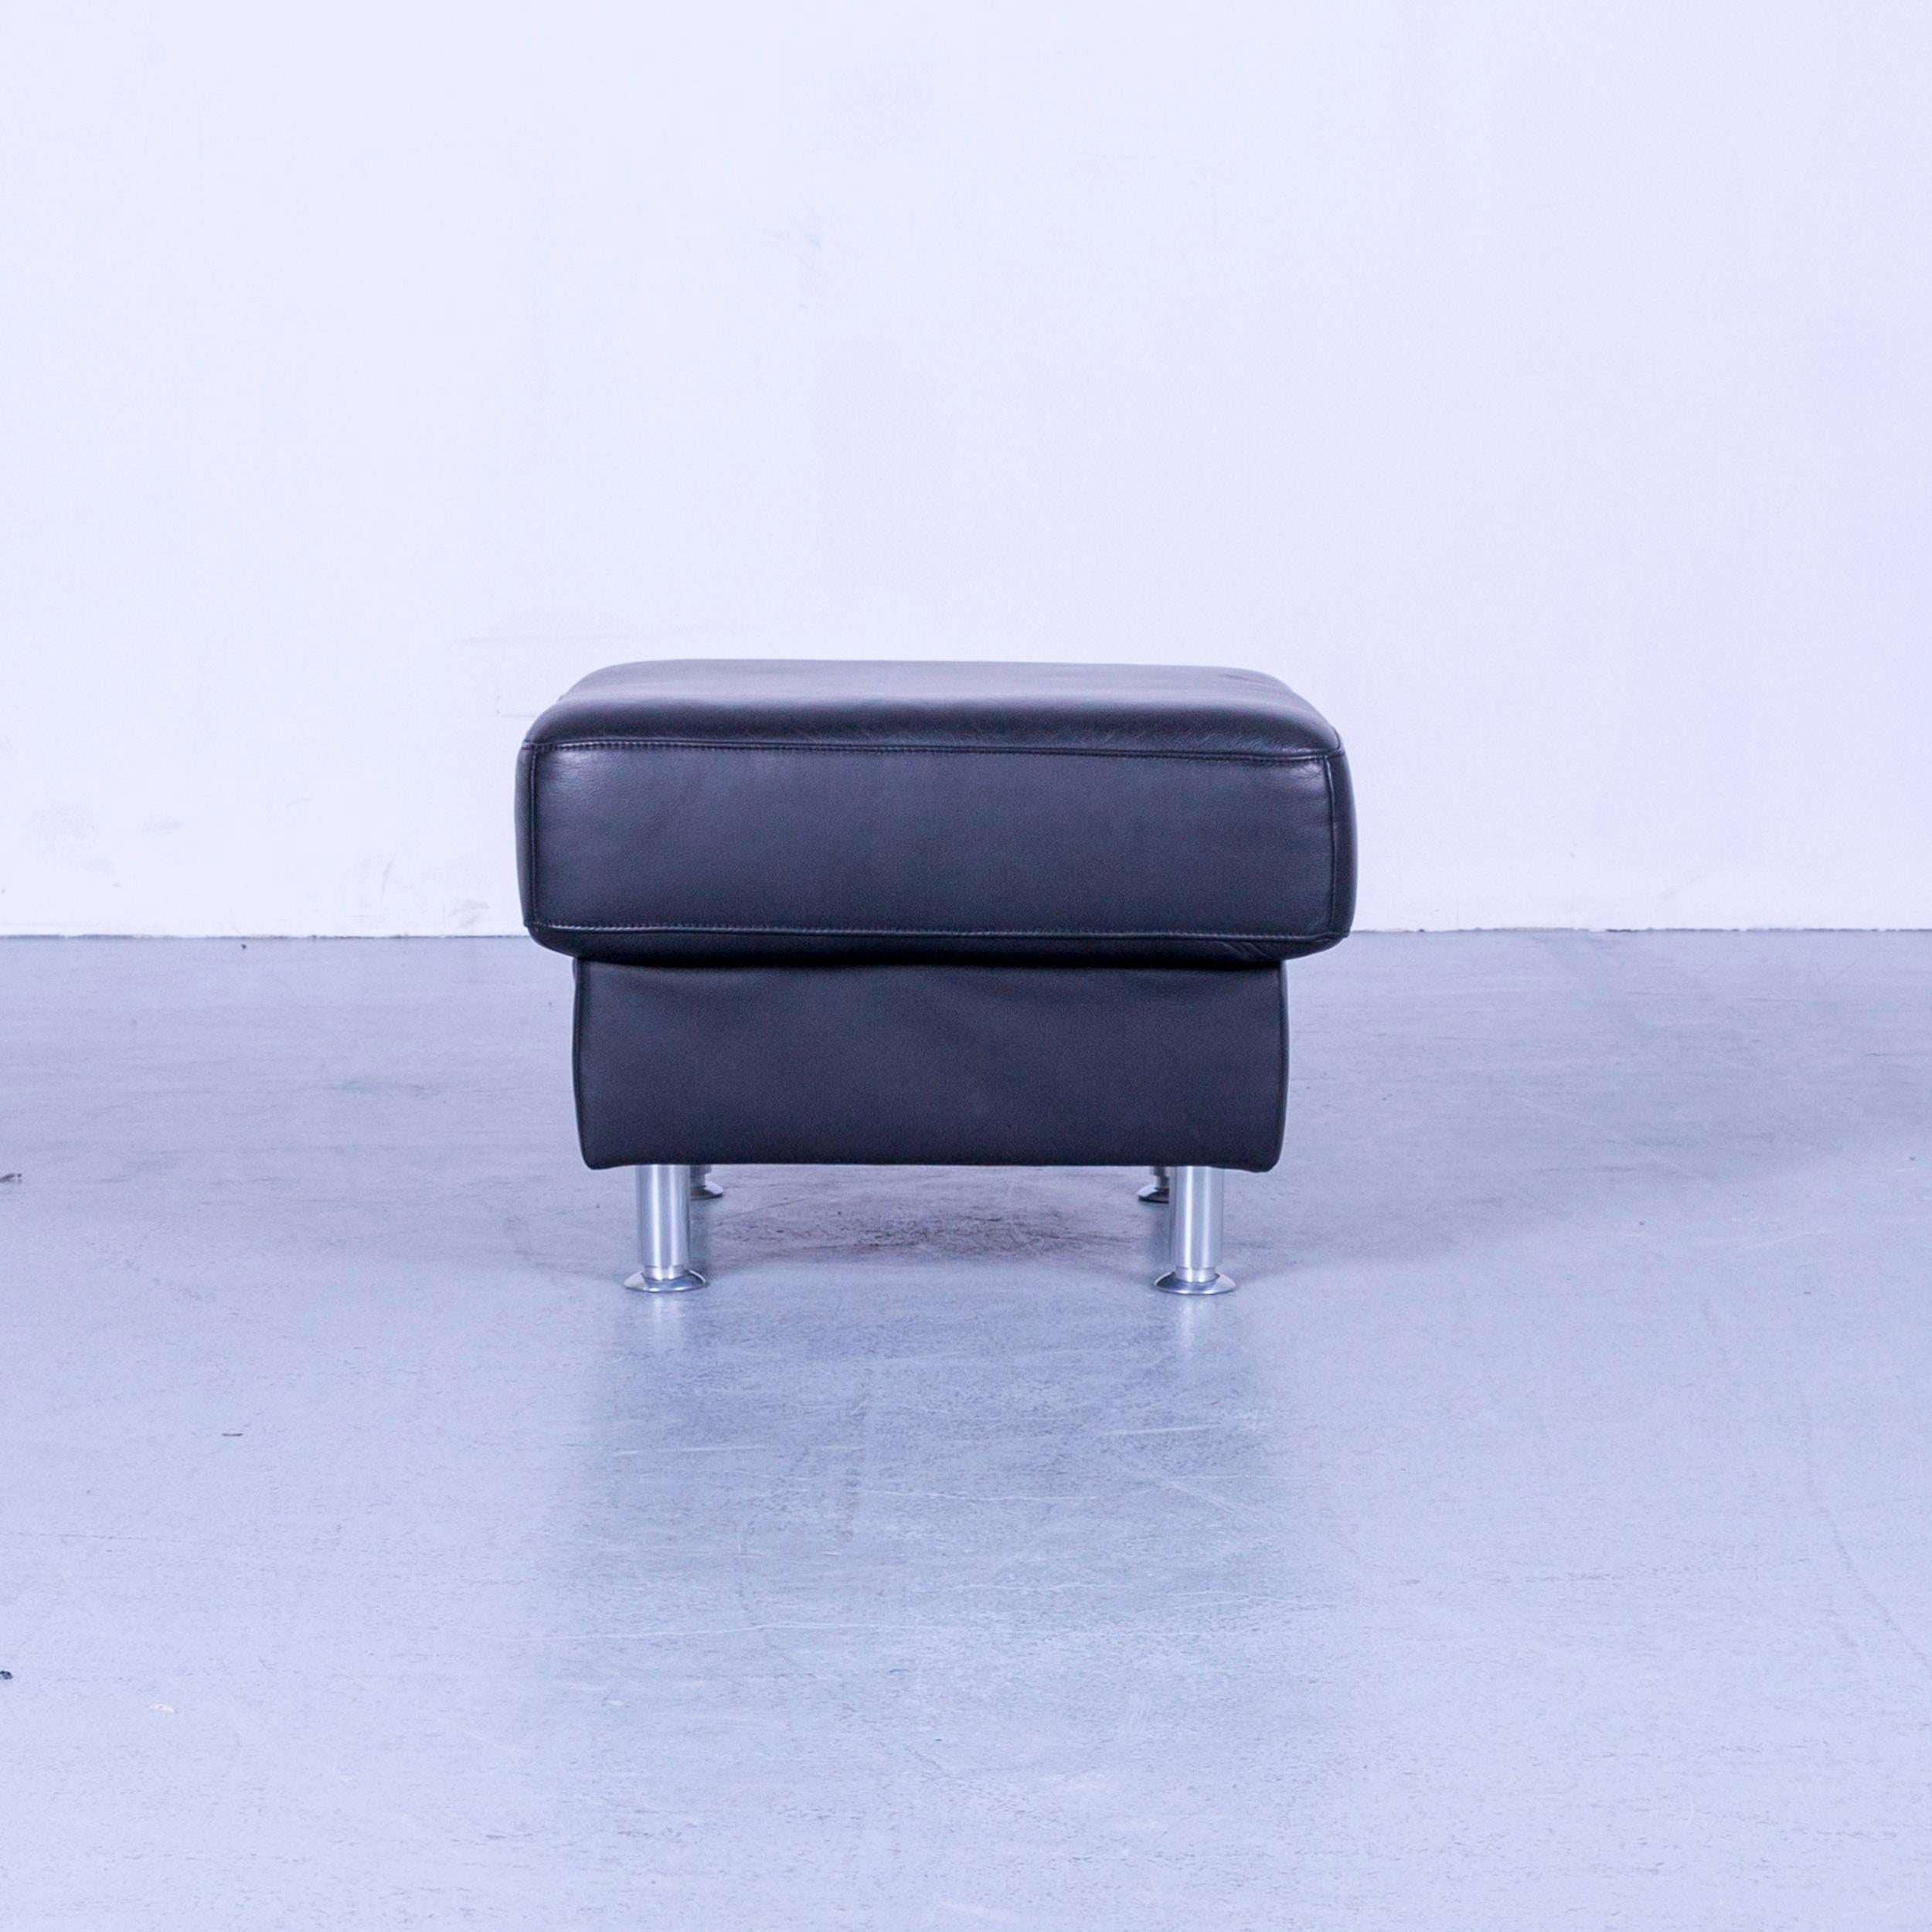 Ewald Schillig Florenz designer footrest black leather, in a minimalistic and modern design, made for pure comfort.